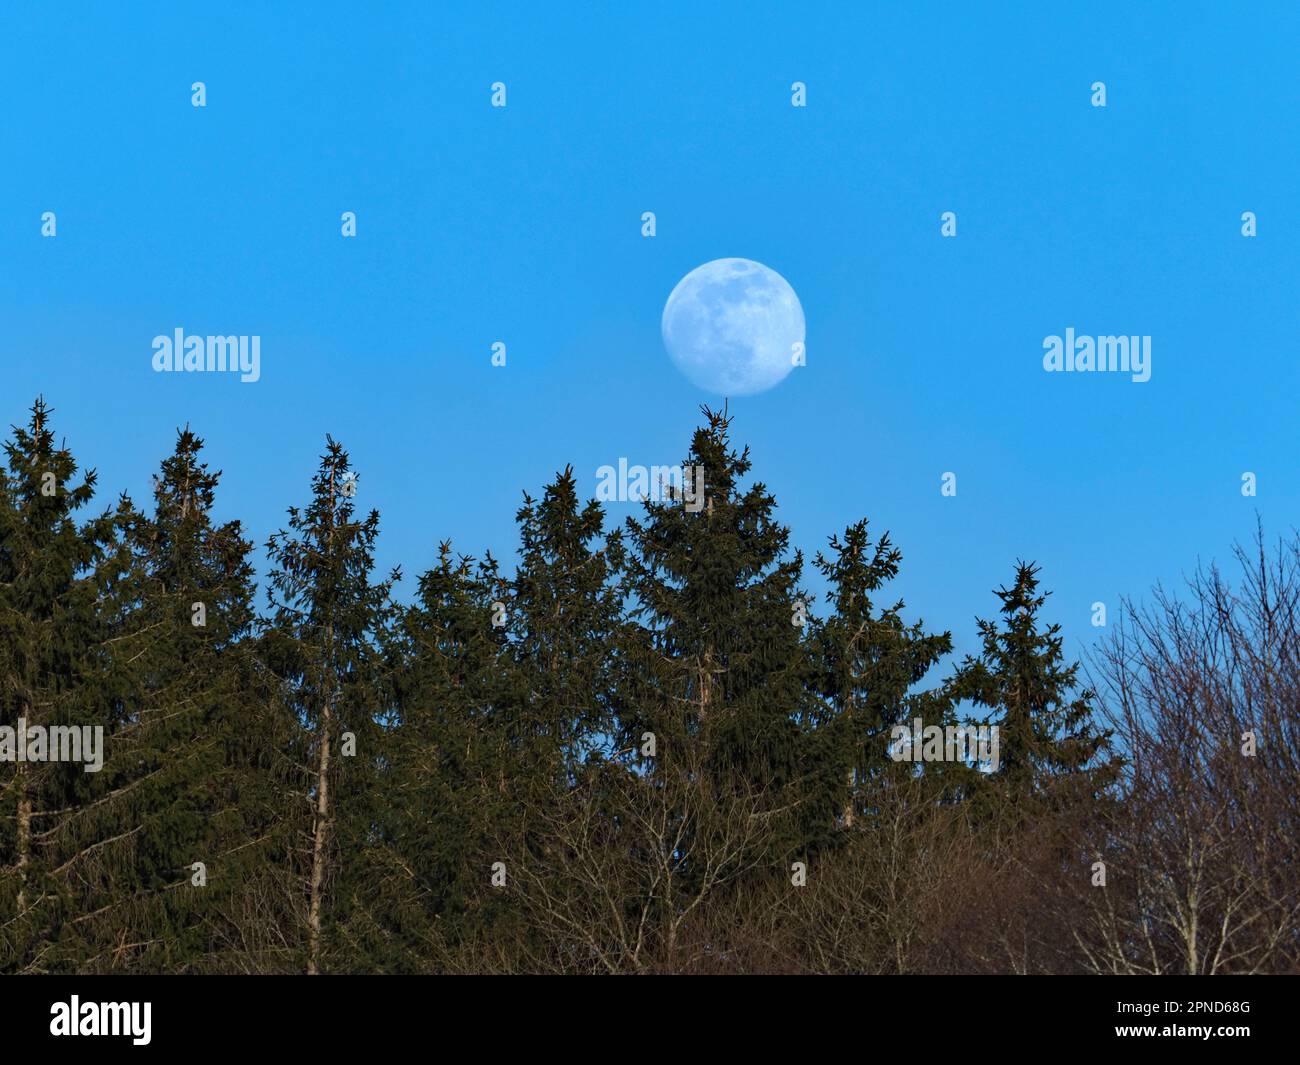 lune en équilibre sur la cime d'un sapin Foto Stock